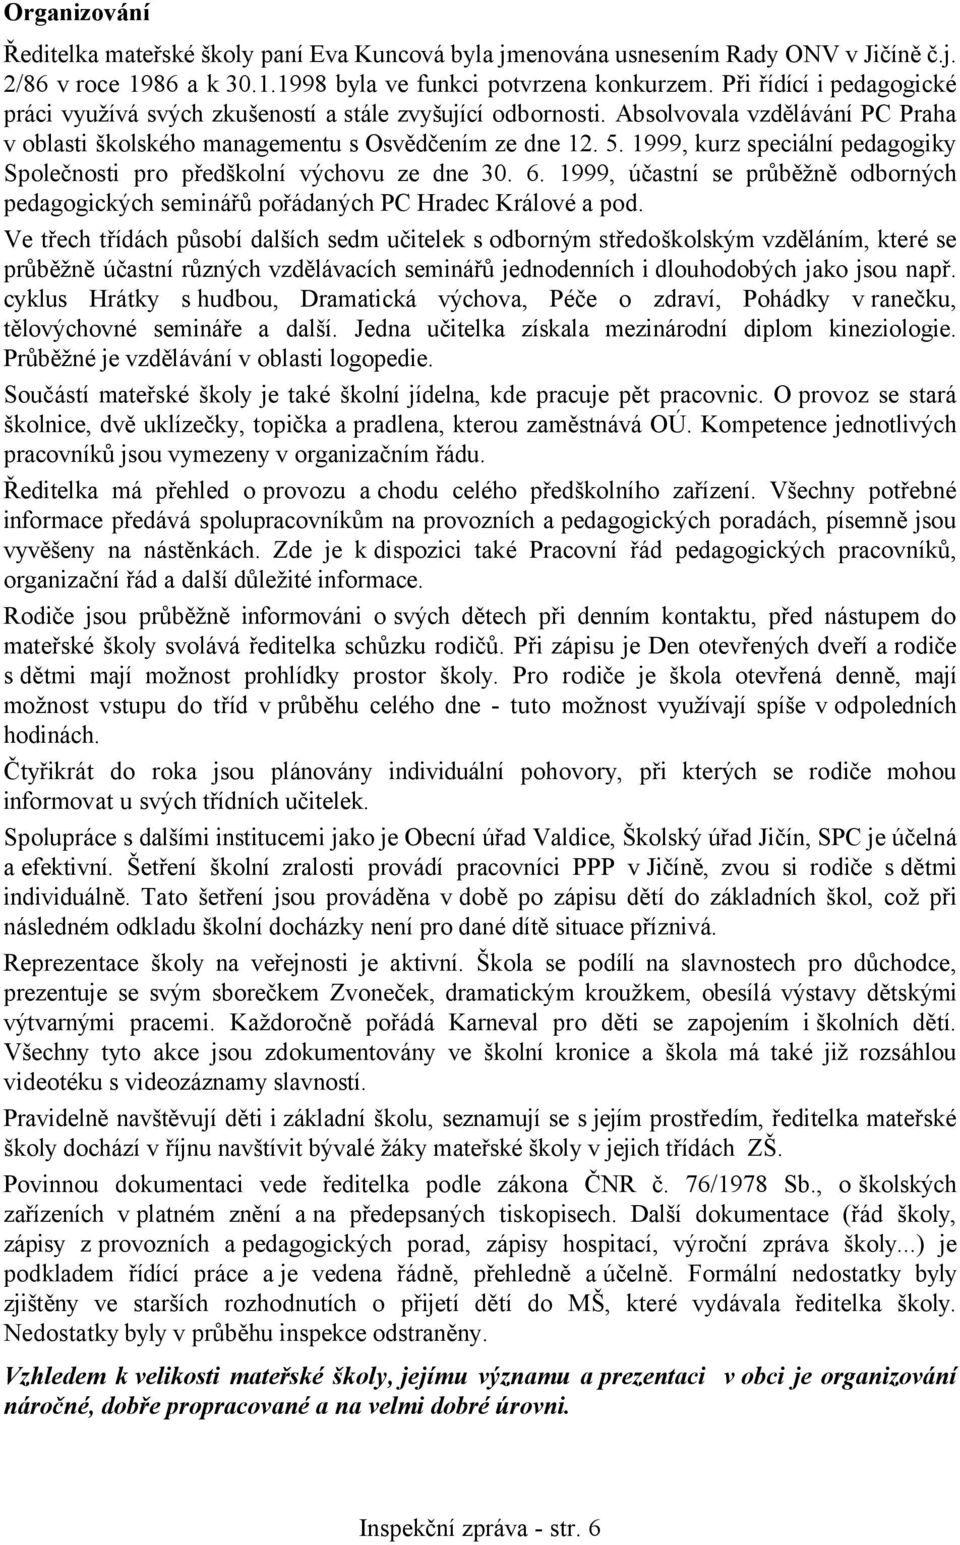 1999, kurz speciální pedagogiky Společnosti pro předškolní výchovu ze dne 30. 6. 1999, účastní se průběžně odborných pedagogických seminářů pořádaných PC Hradec Králové a pod.